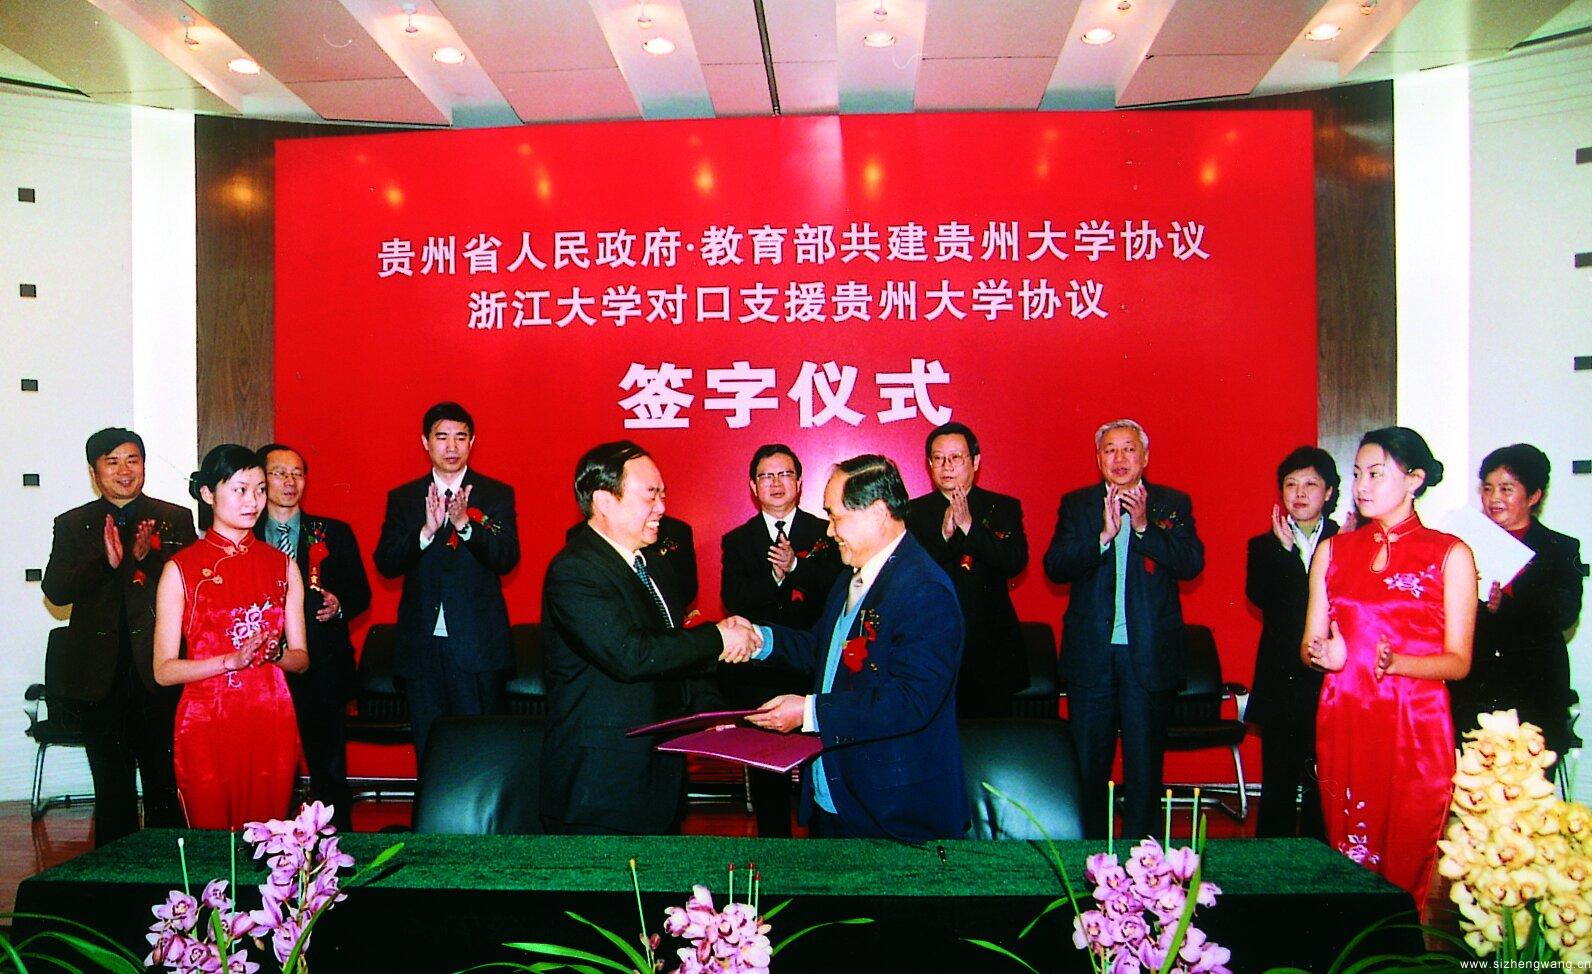 2004 年 12 月 23 日，贵州省人民政府、教育部在贵阳签订共建贵州大学协议。